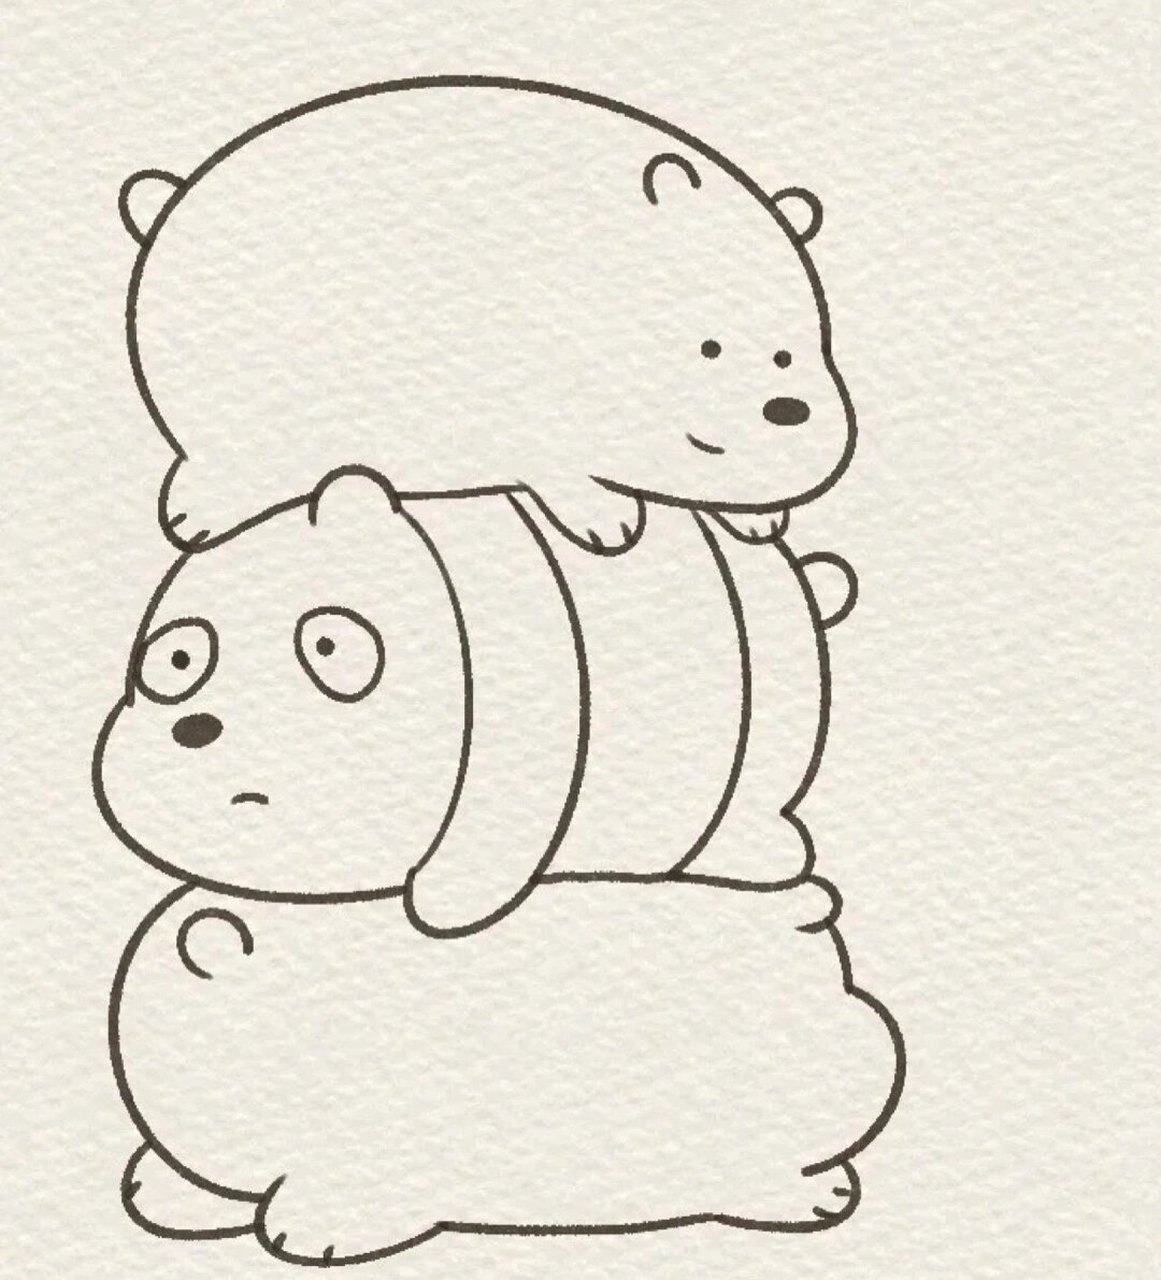 三只裸熊简笔画教程,一只熊两只熊三只熊!